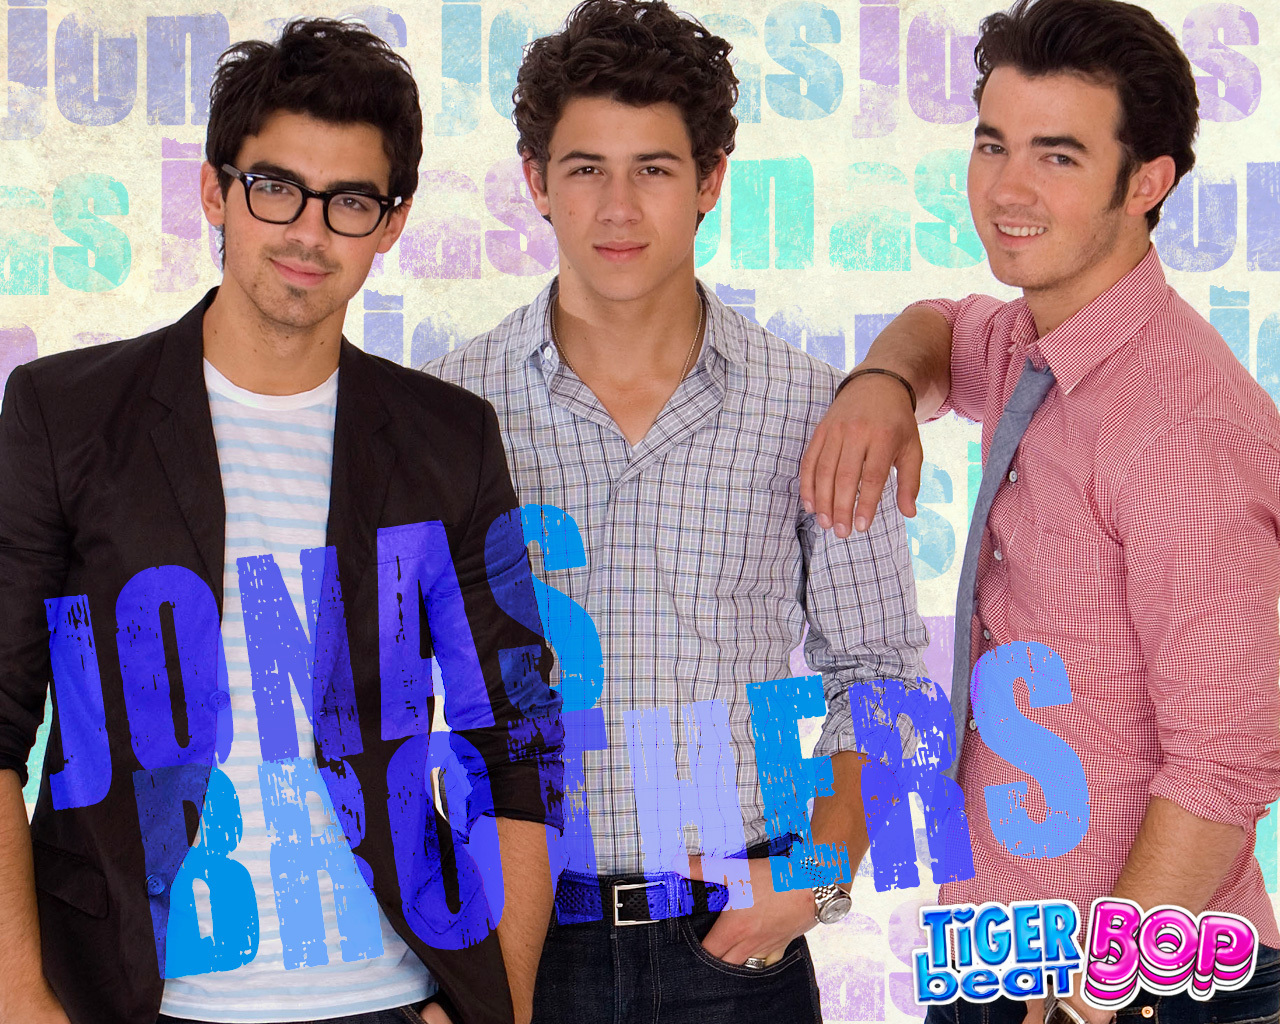 Jb Wallpaper The Jonas Brothers